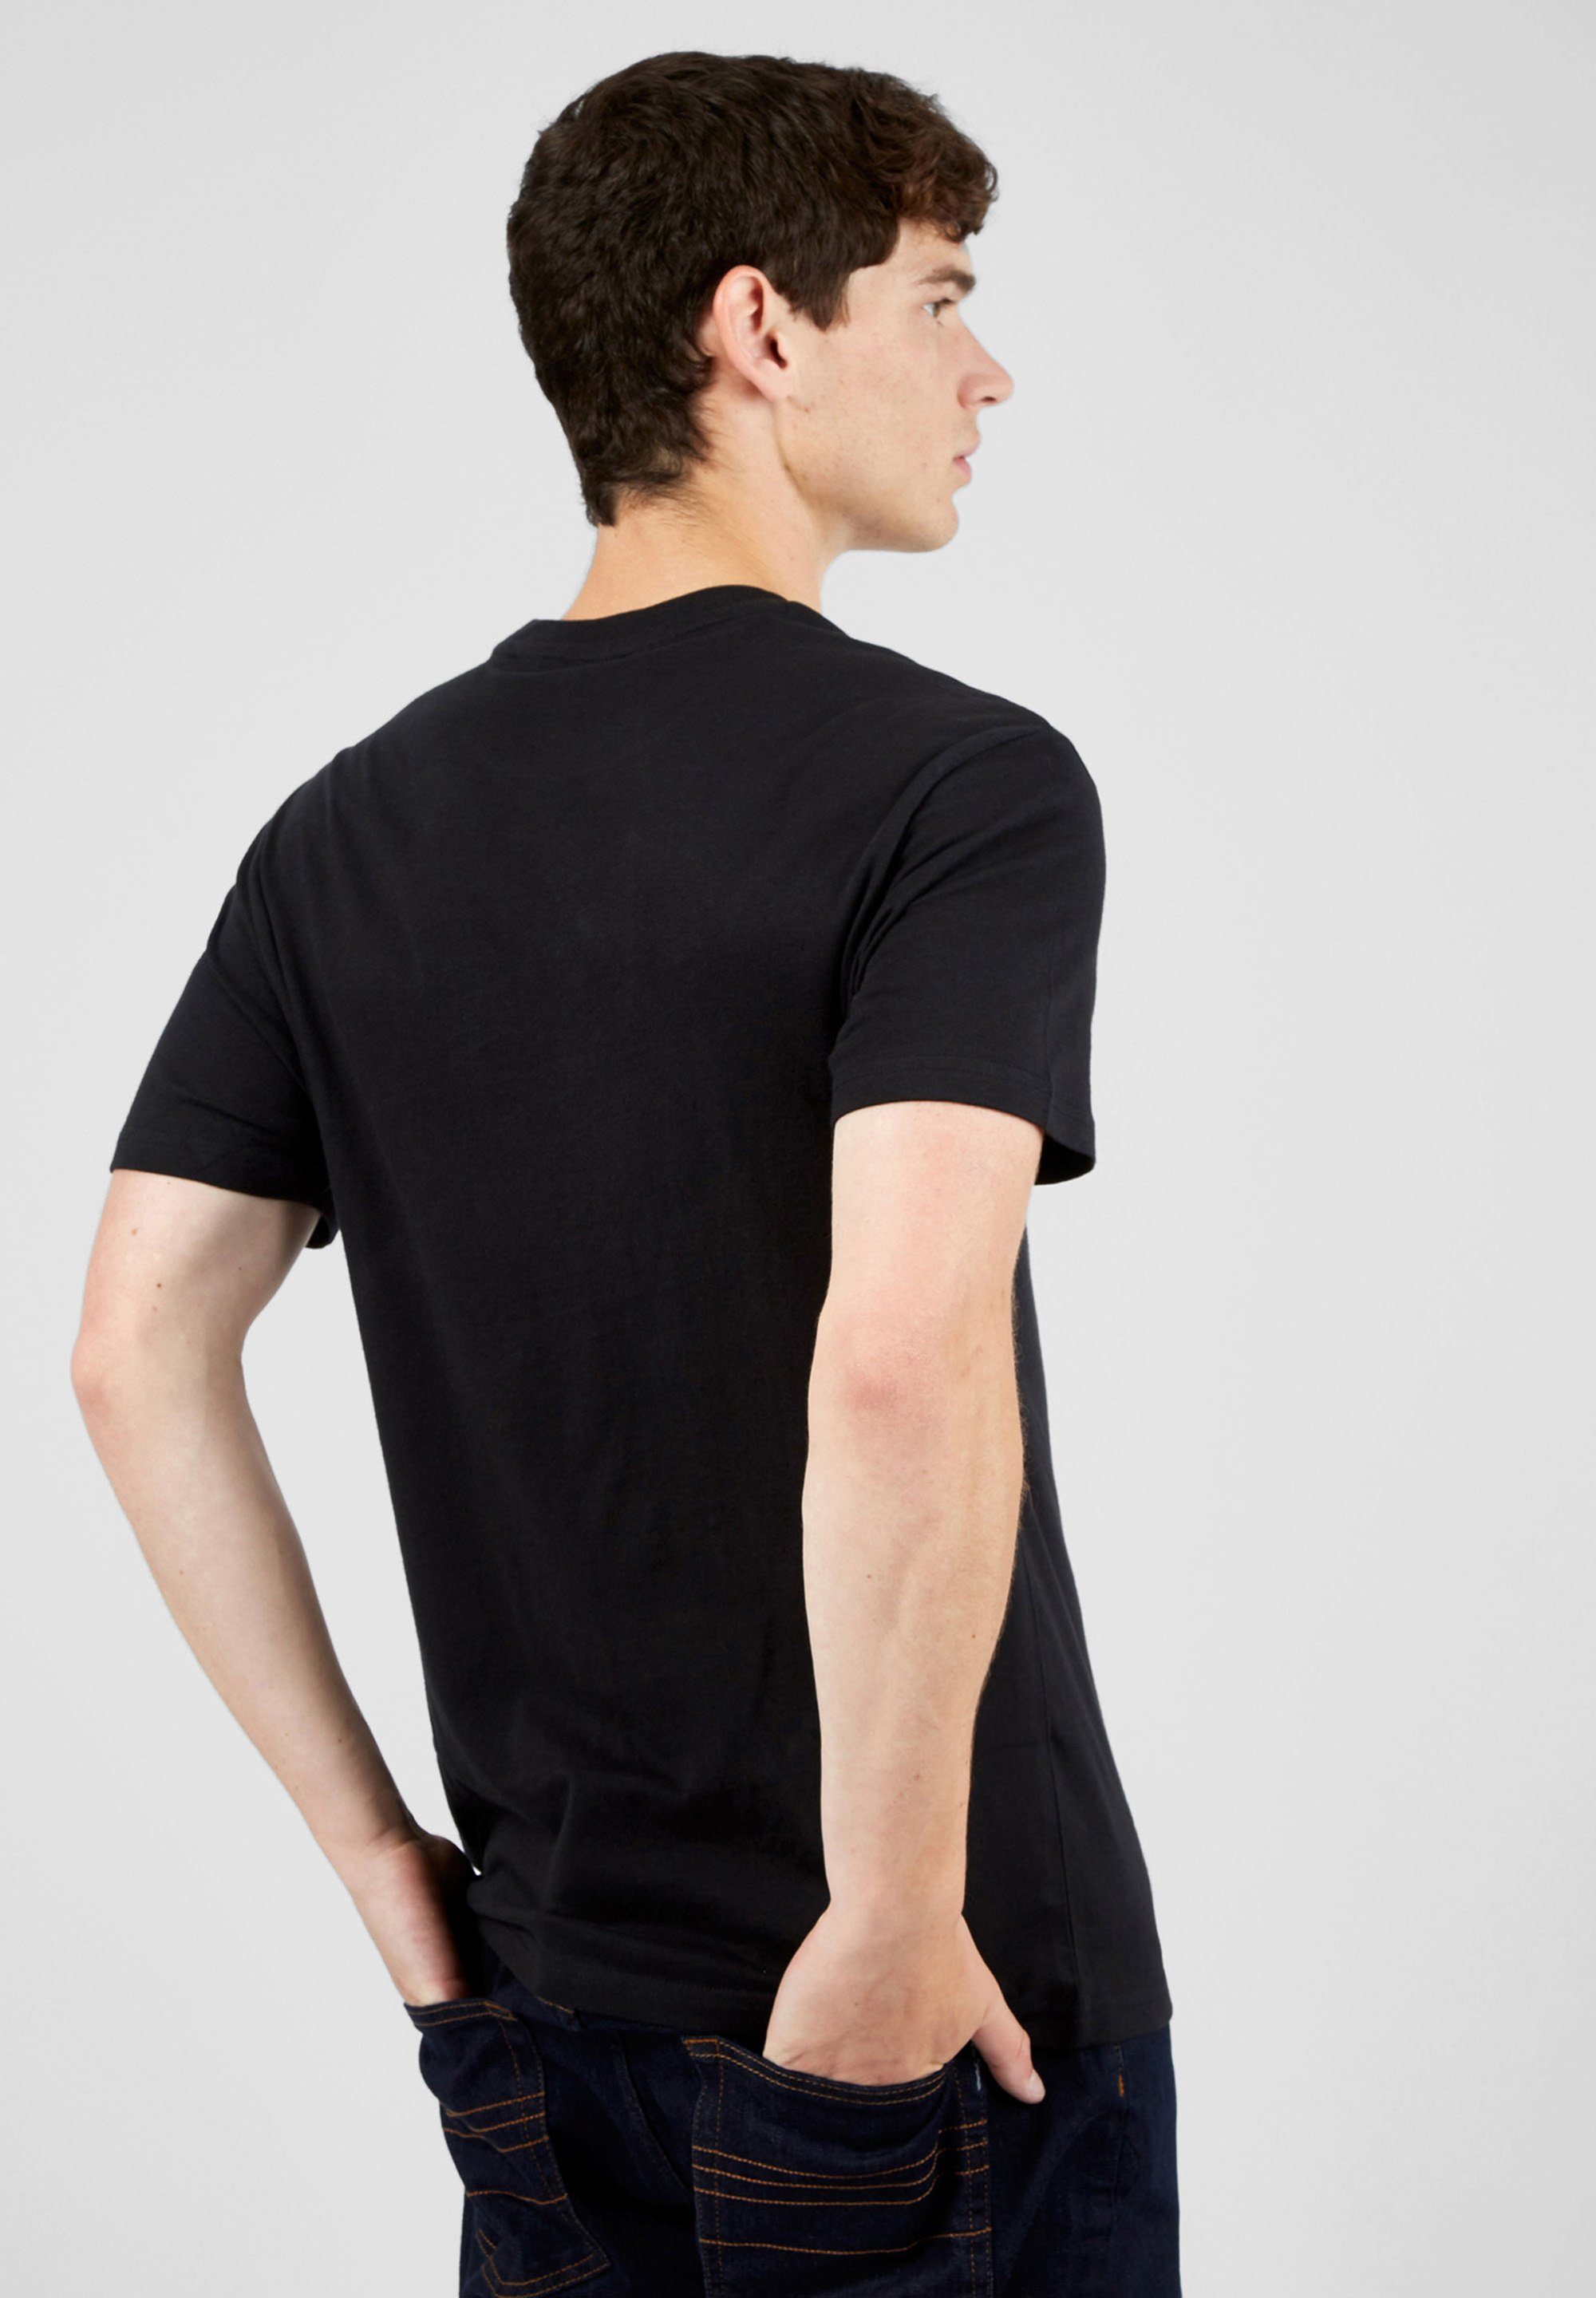 Ben Sherman T-Shirt Signature Grafisch Tee Target bedrucktes schwarz T-Shirt